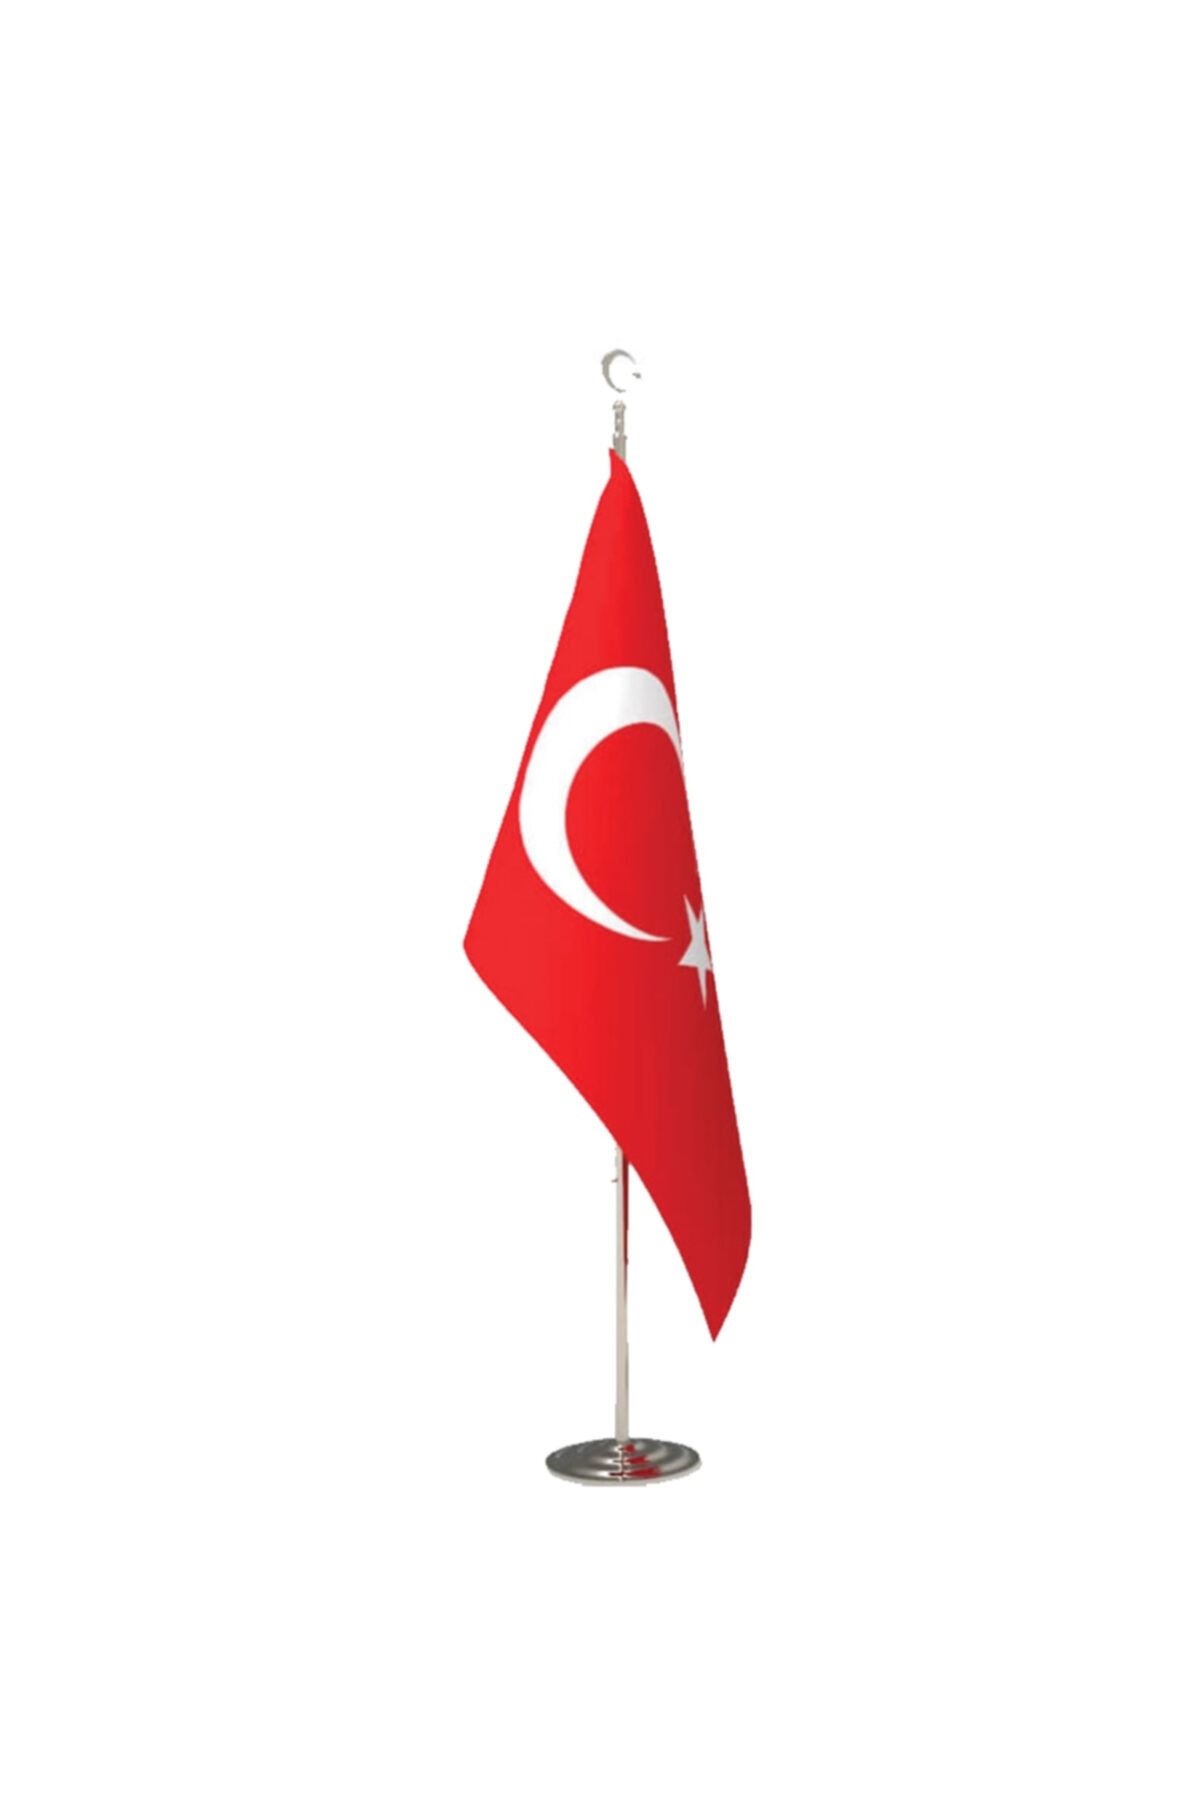 hazar bayrak Makam Türk Bayrağı 100x150cm 1.kalite Ürün